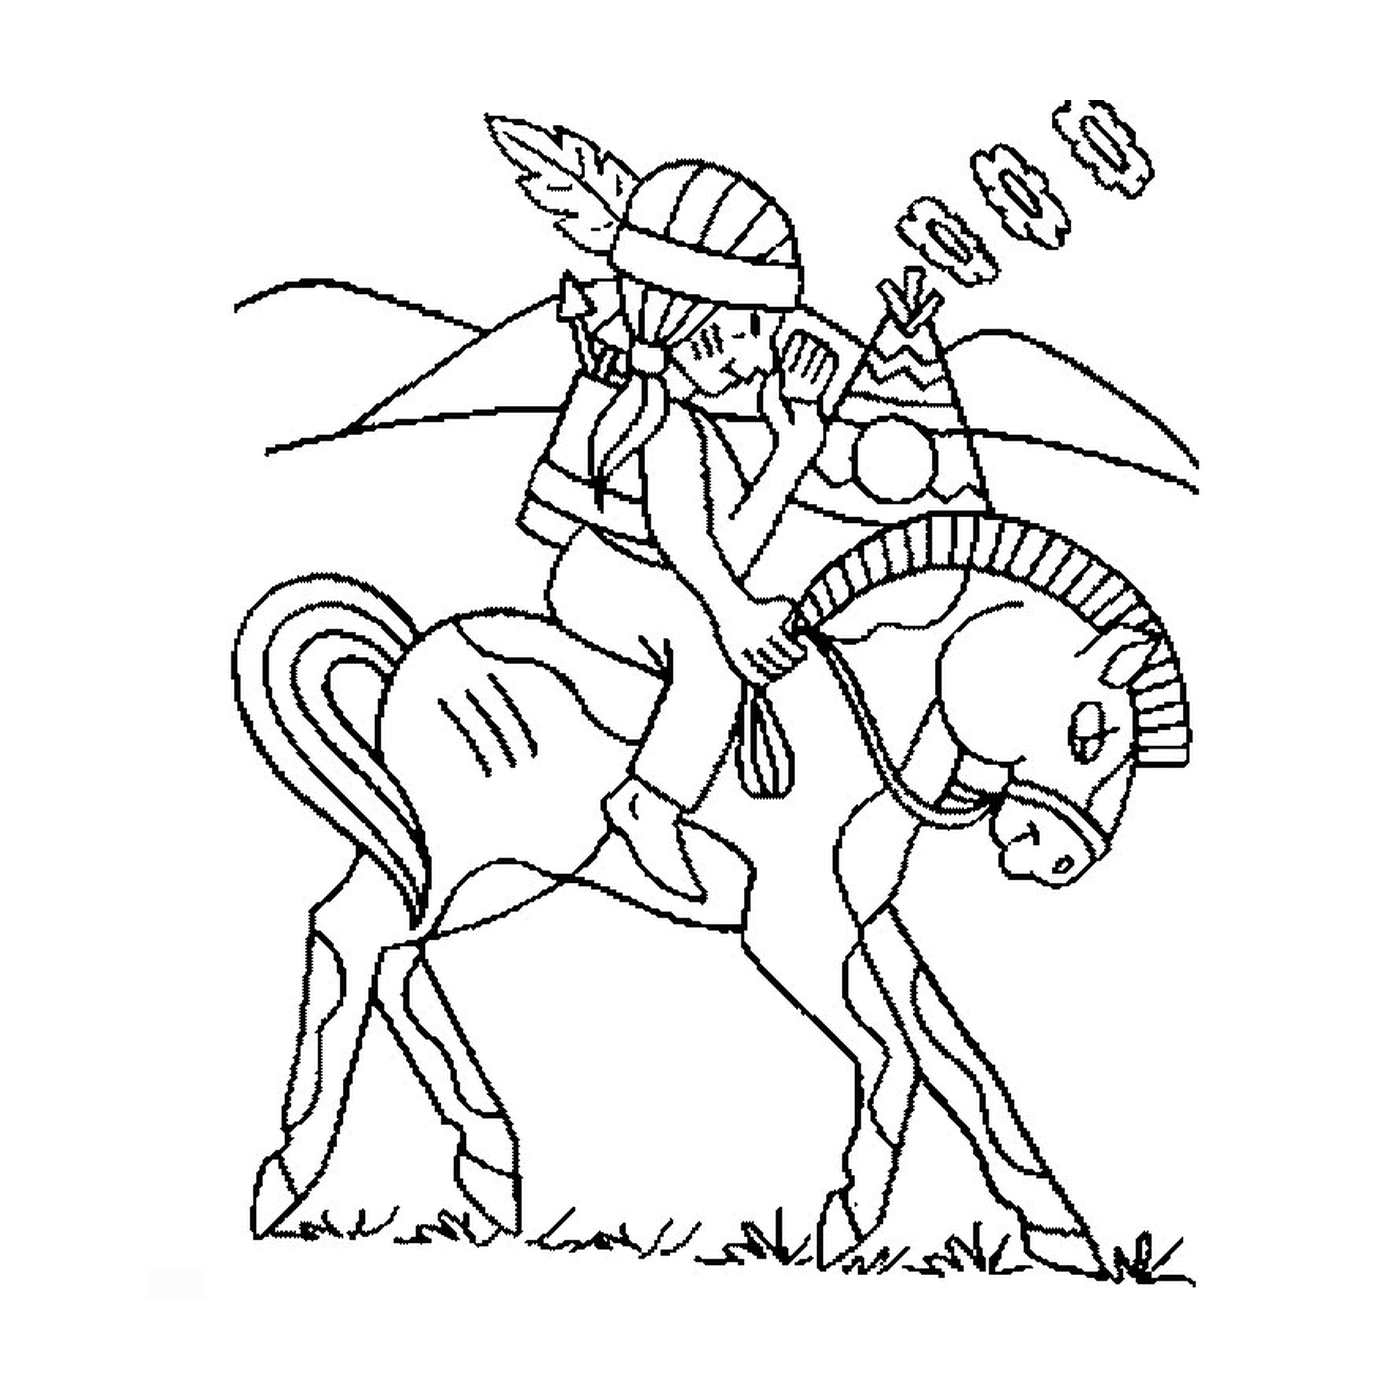  Uma pessoa montando um cavalo como os índios 